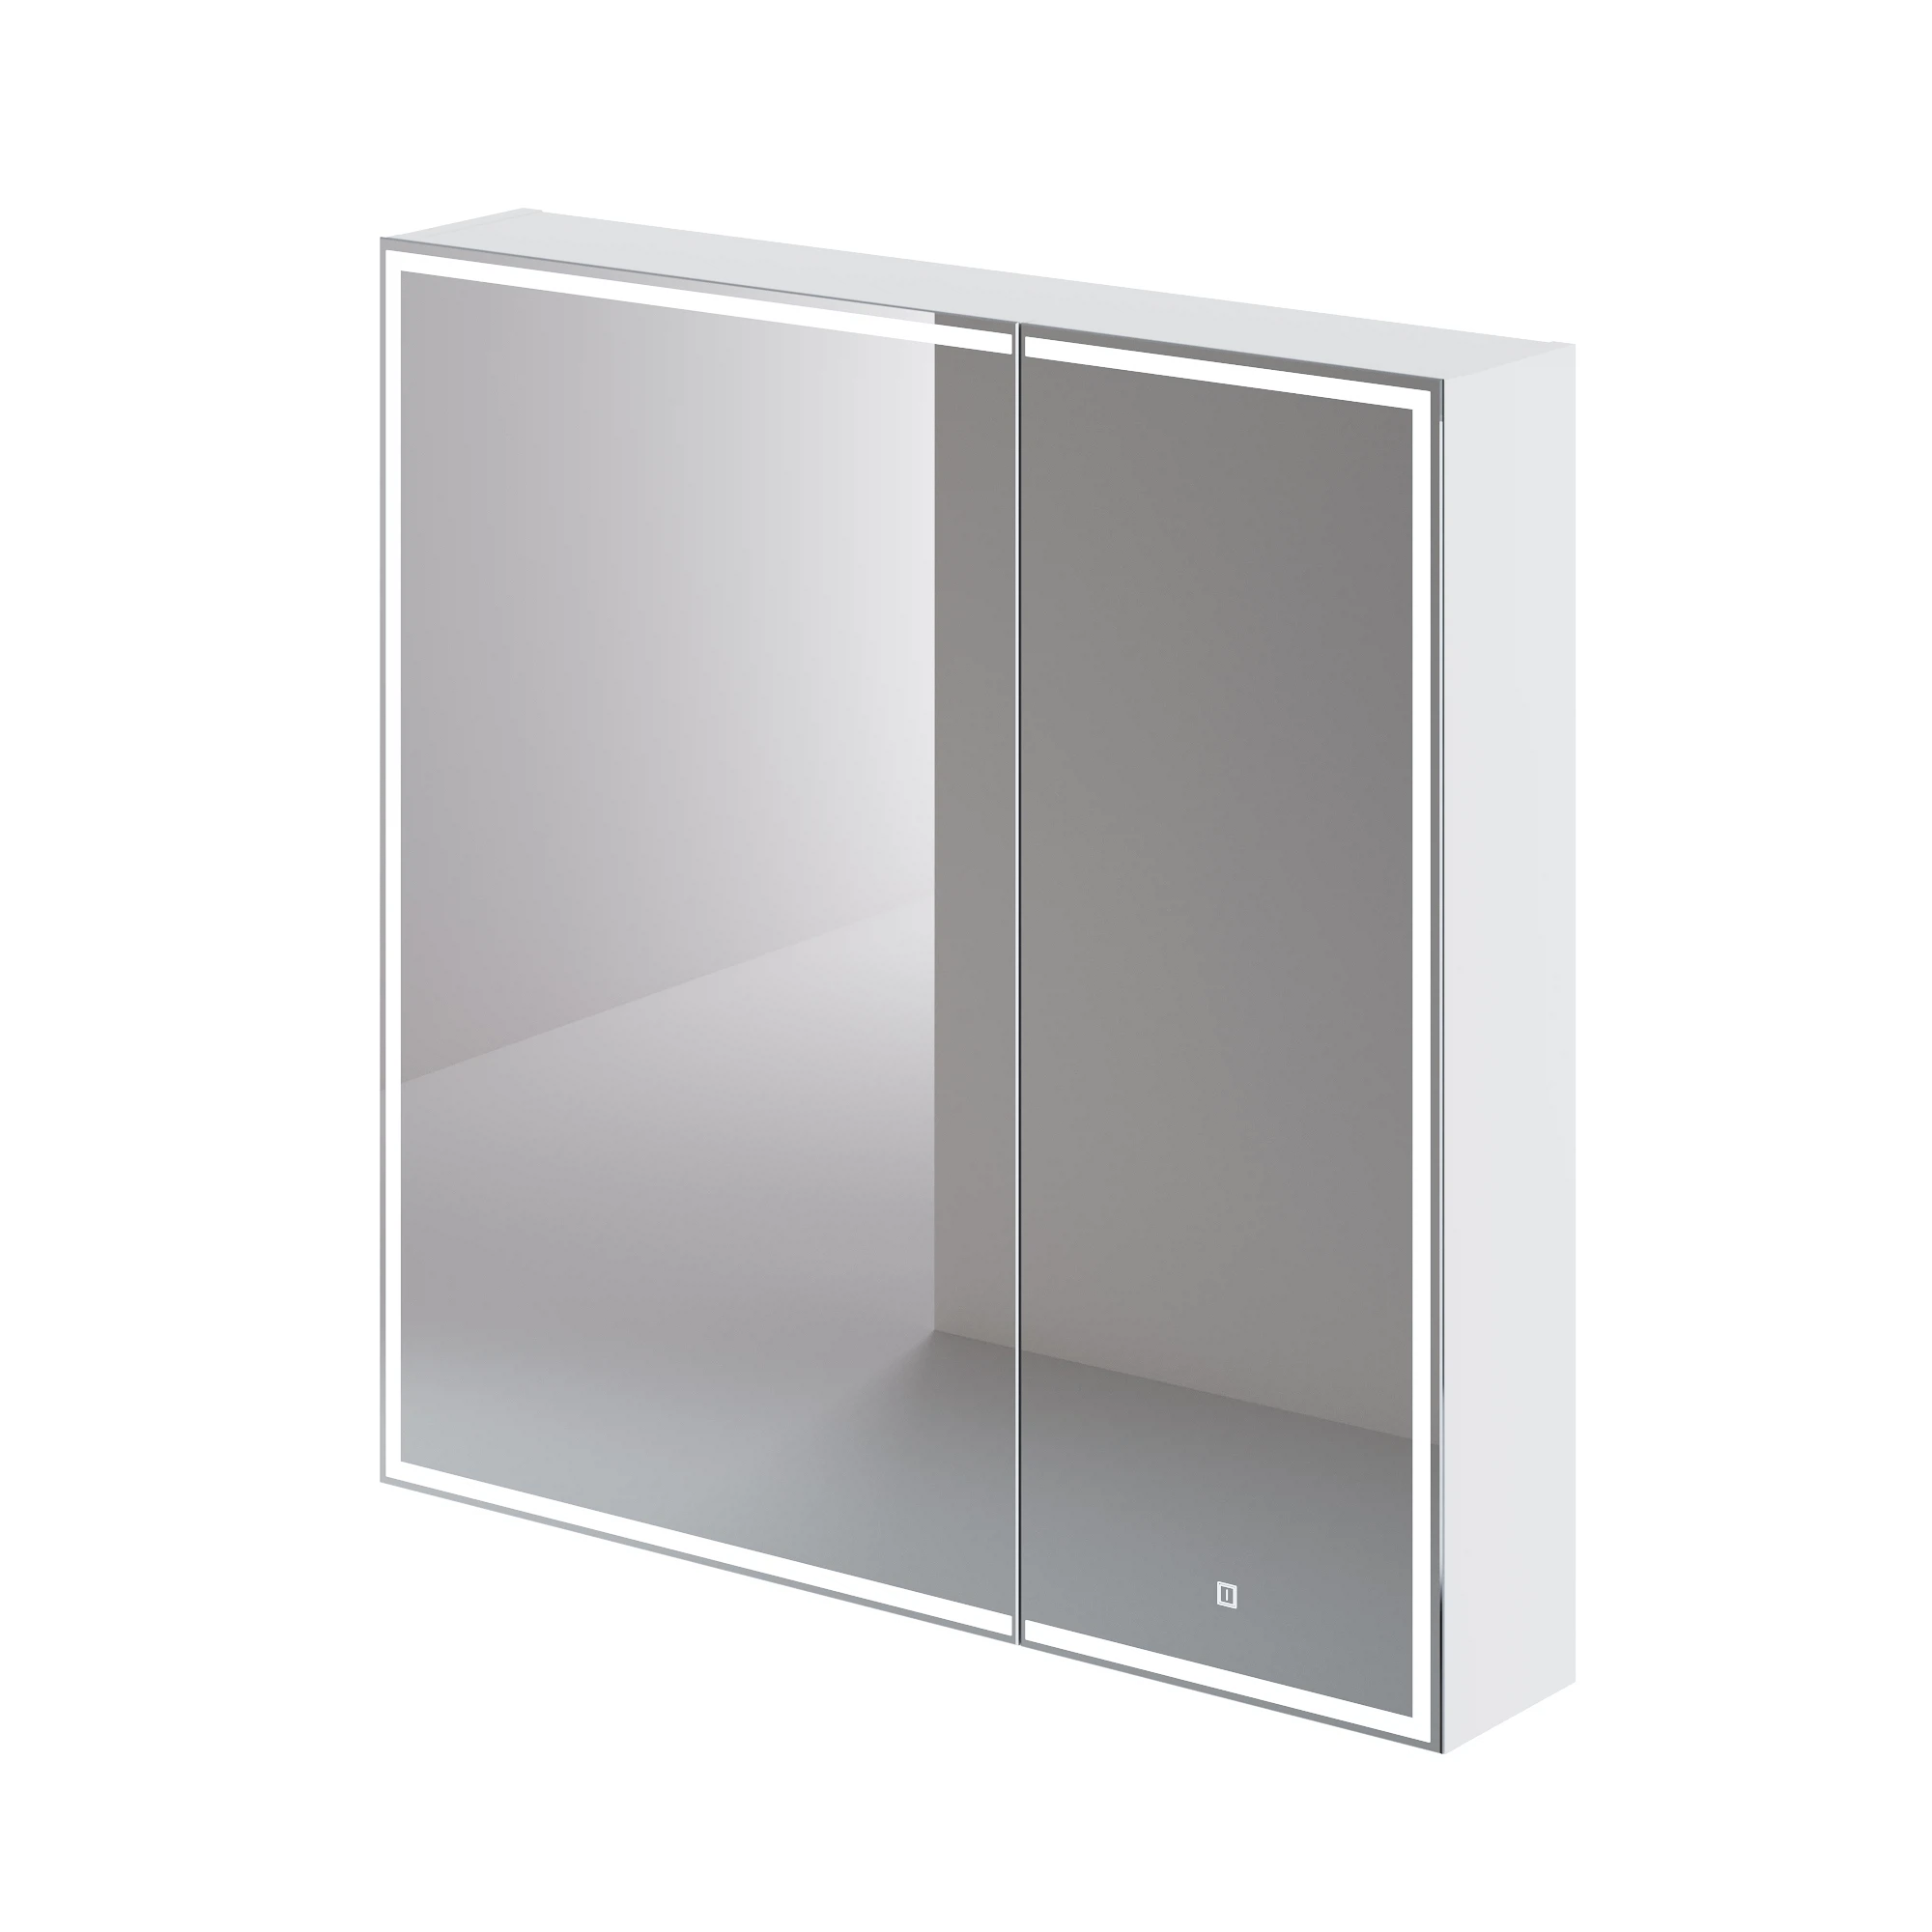 Зеркальный шкаф Итана Luce 4657792954910 800*790 мм (белый) с подсветкой